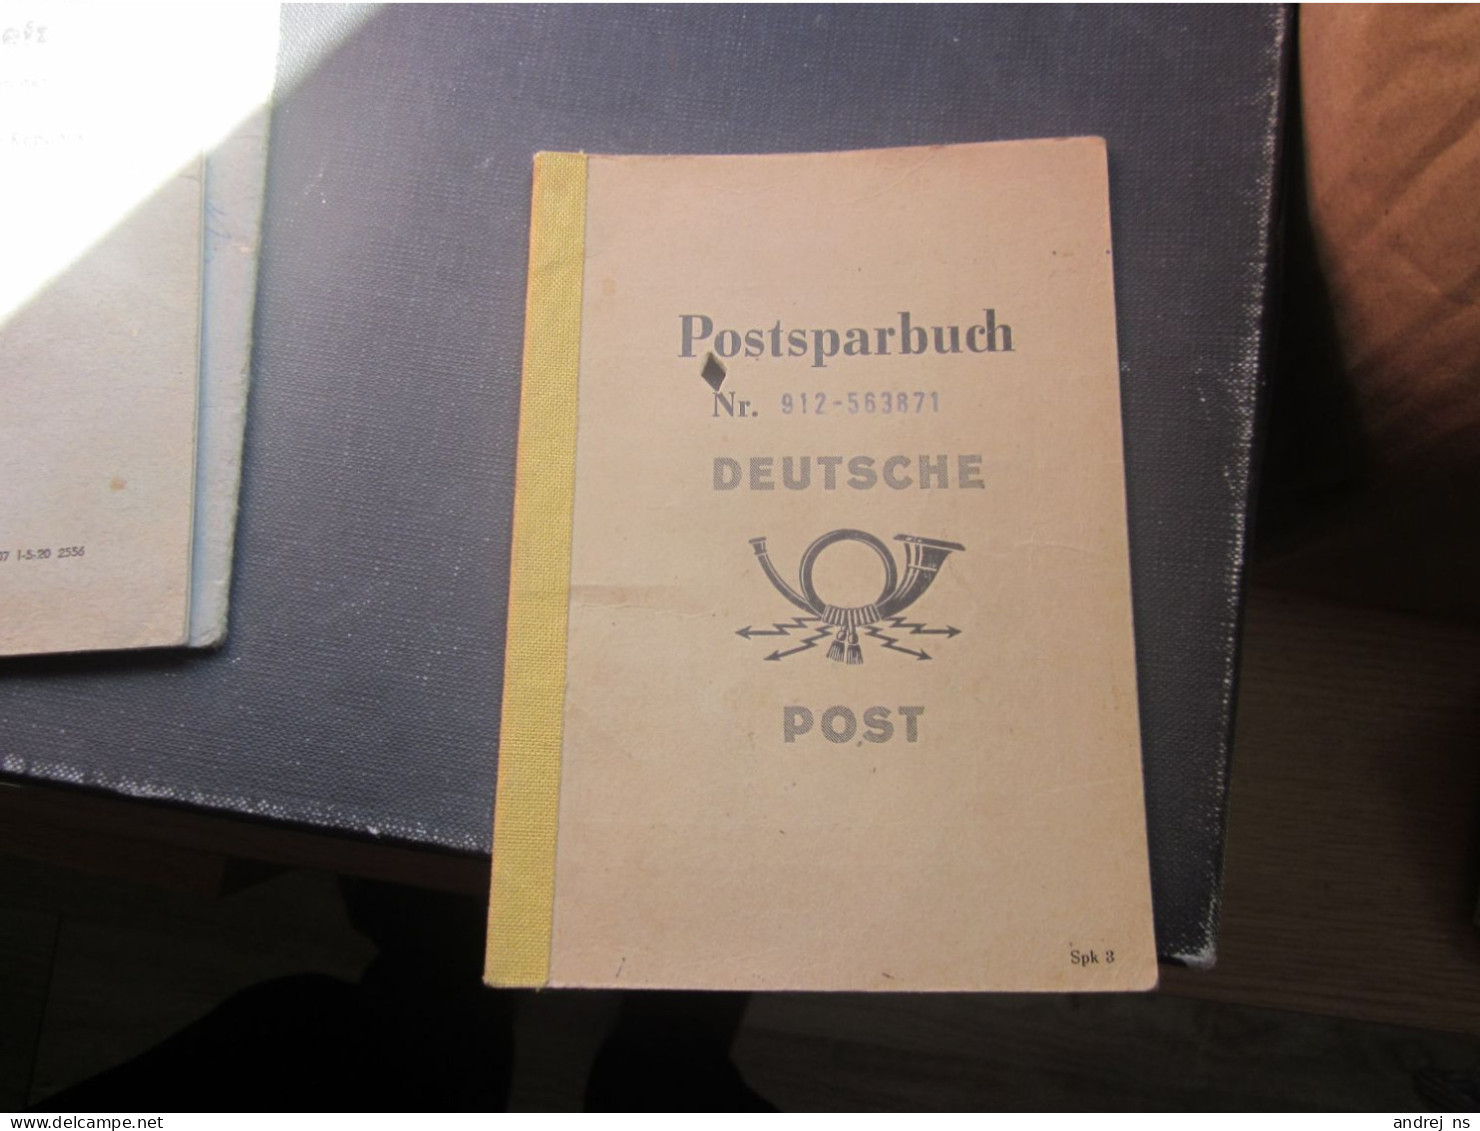 Postsparbuch Nr 912-563871  Deutsche Post - Historical Documents